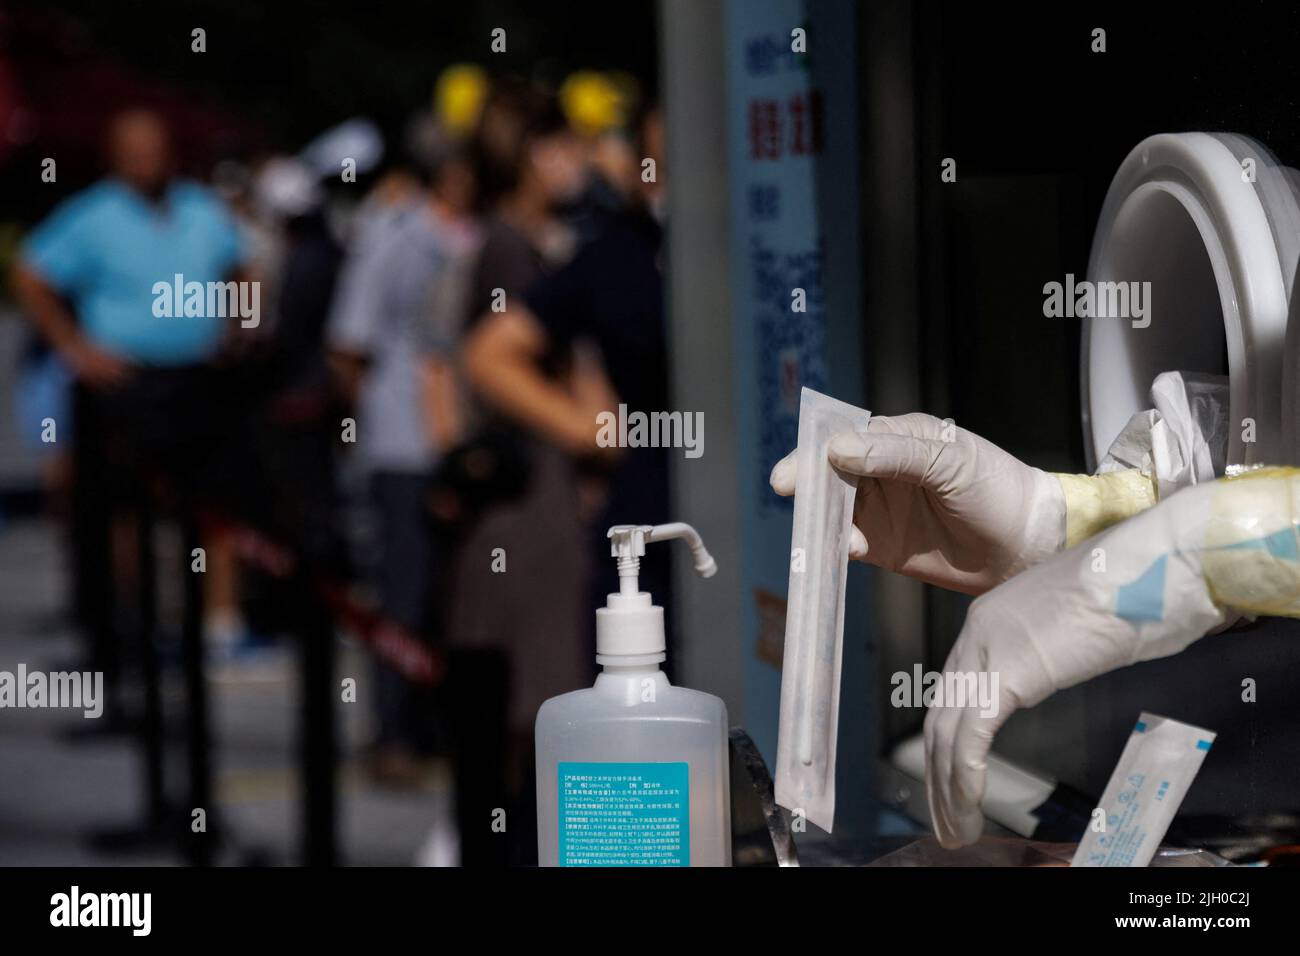 Un operatore medico prepara un kit per il test dei tamponi presso una stazione per il test degli acidi nucleici, in seguito a un focolaio di coronavirus (COVID-19), a Pechino, Cina, 14 luglio 2022. REUTERS/Thomas Peter Foto Stock